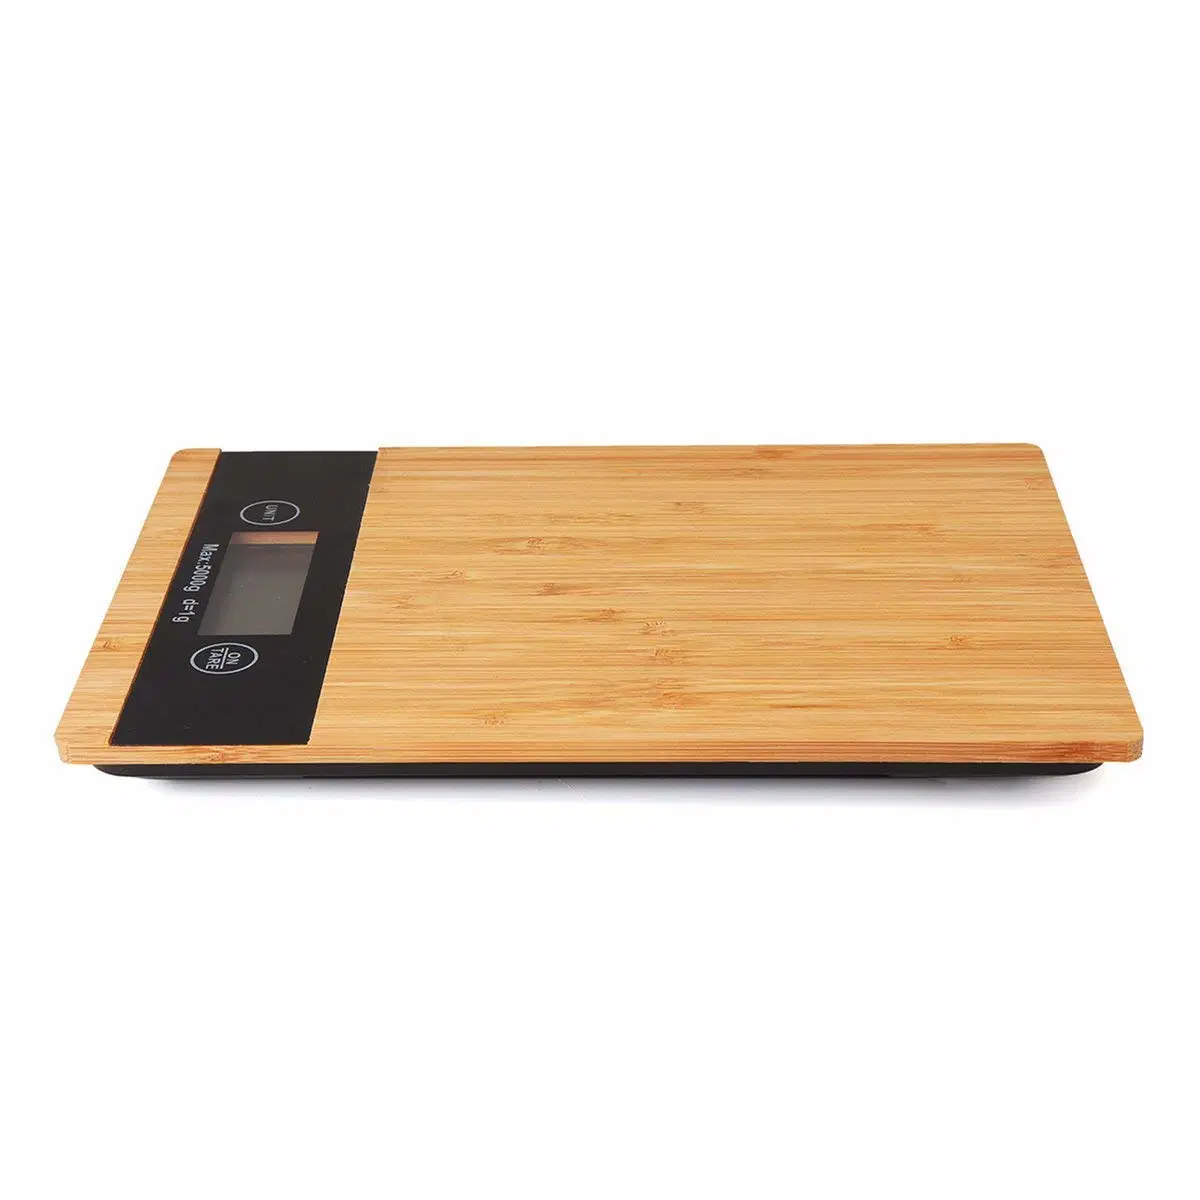 Báscula de cocina electrónica de 5 kg de bambú de balanzas de cocina Báscula de madera